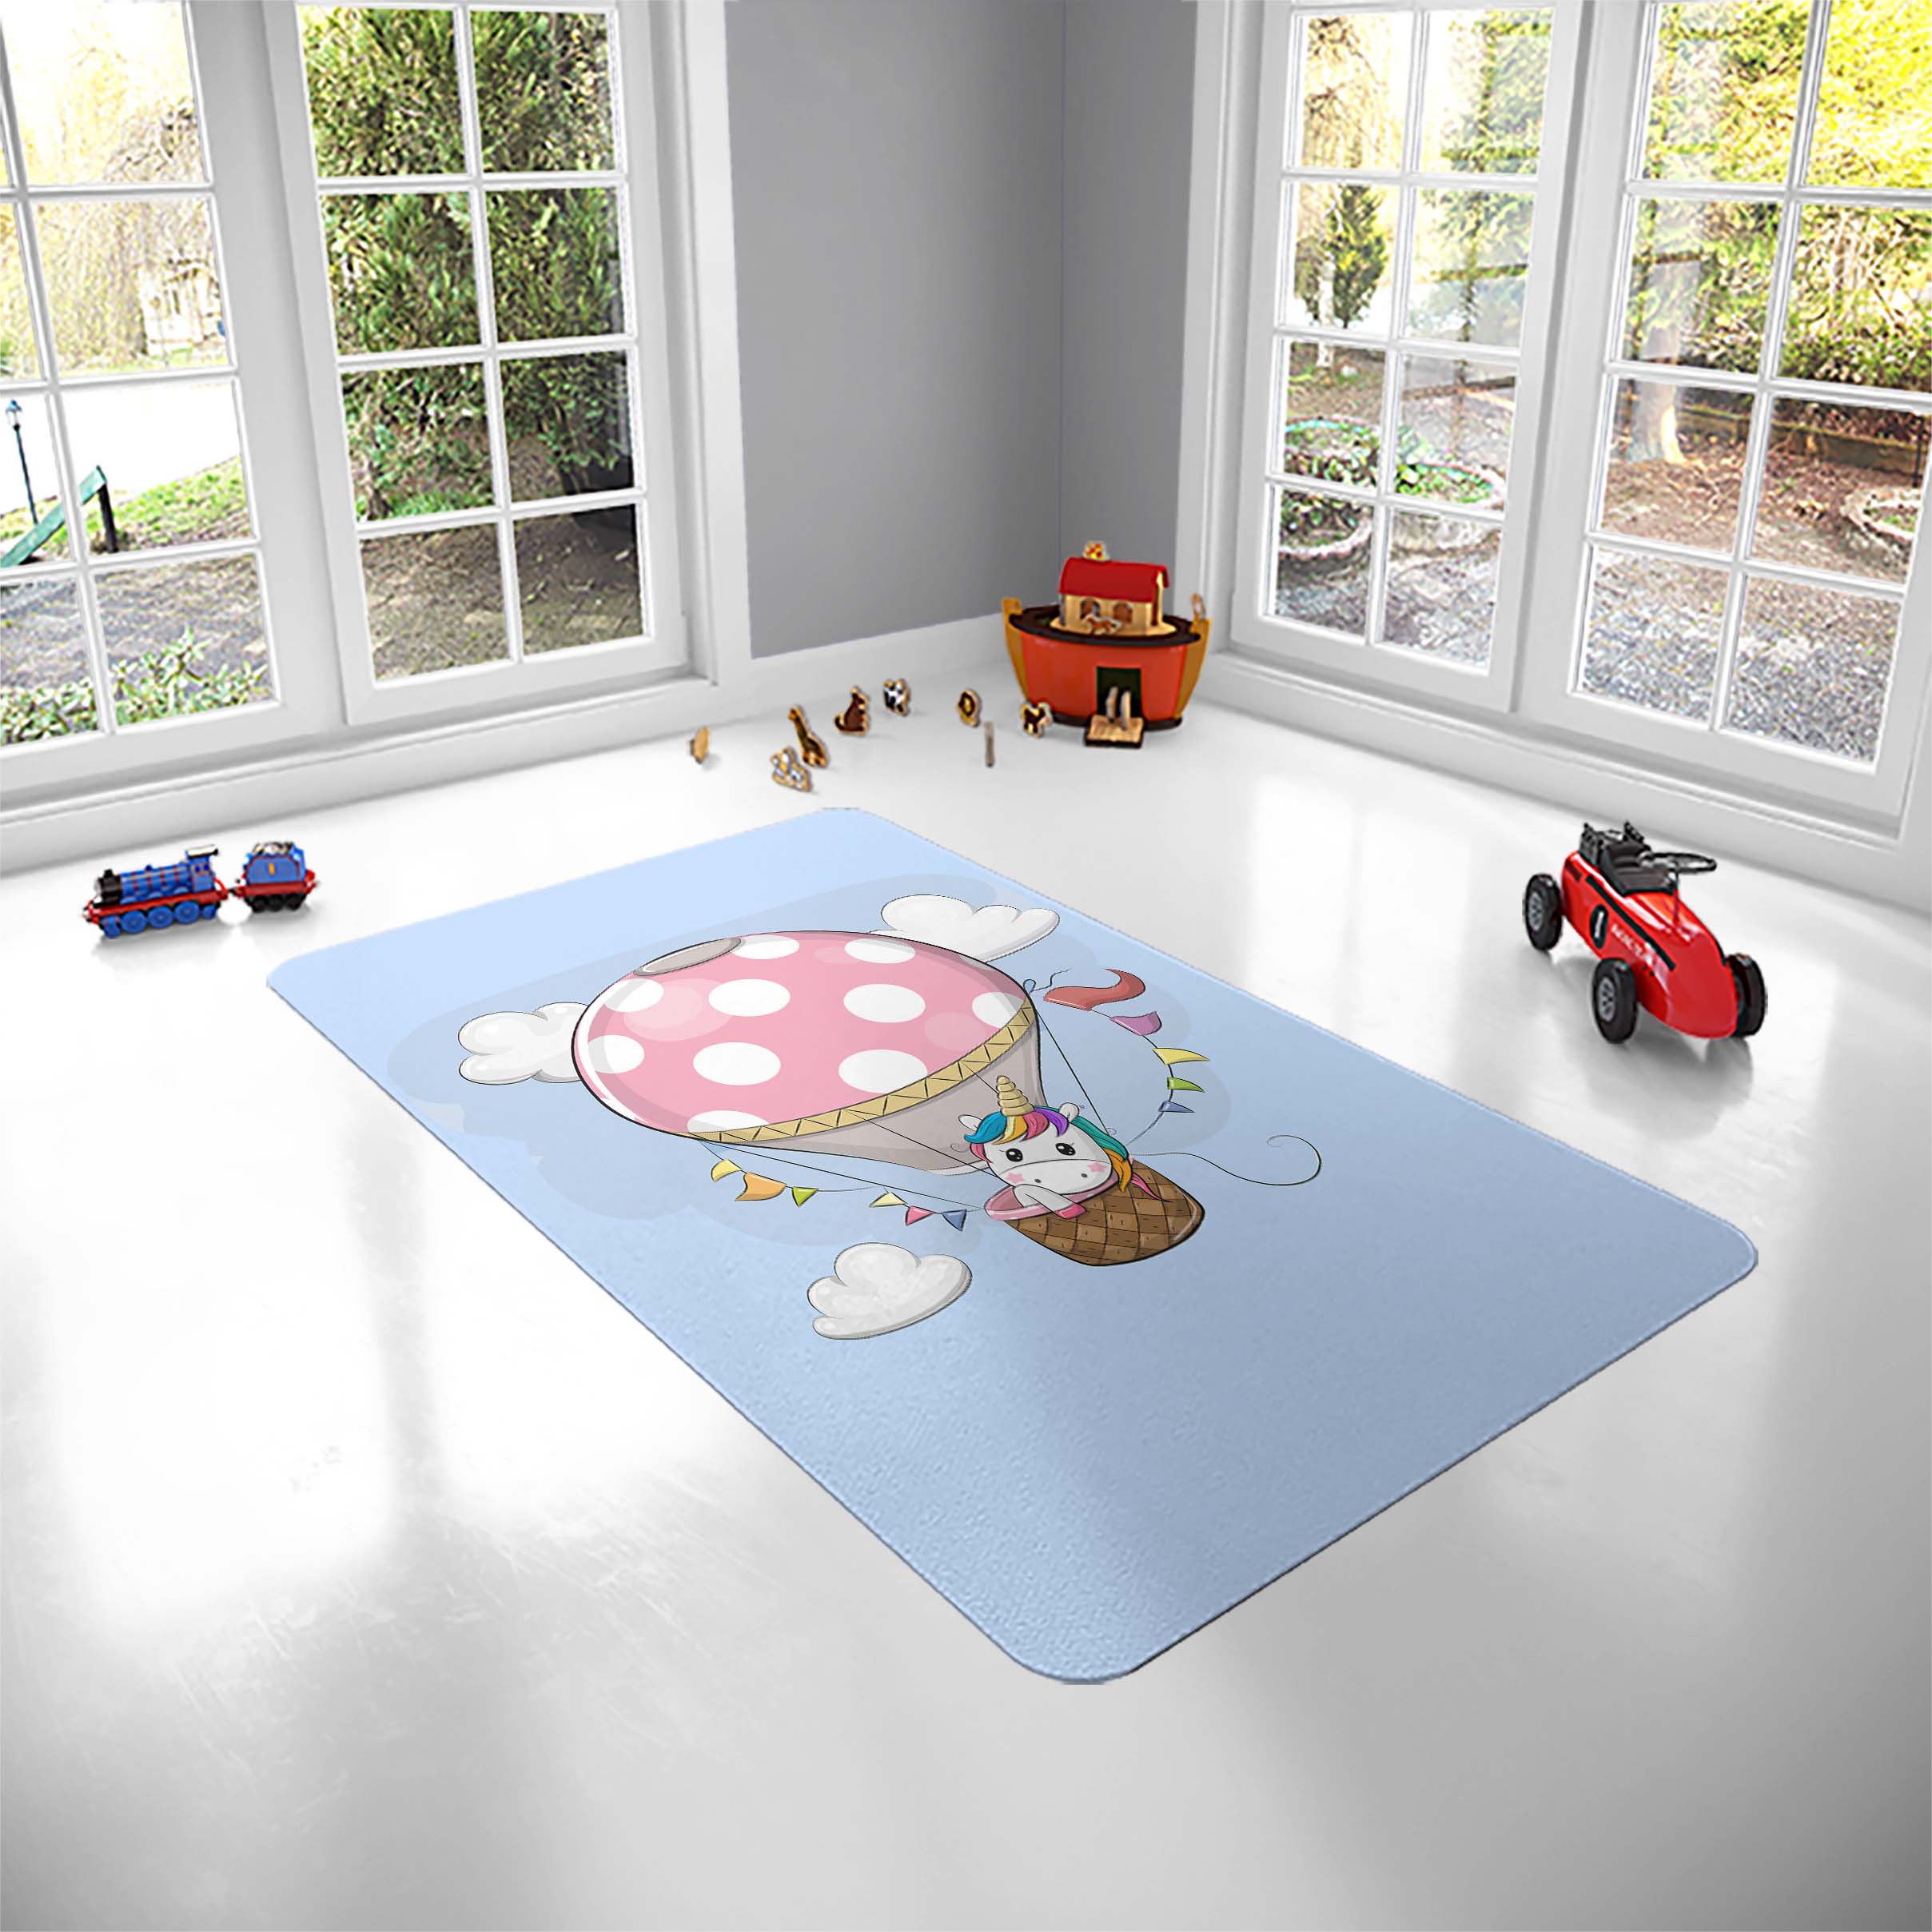 فرش پارچه ای مدل یونیکورن